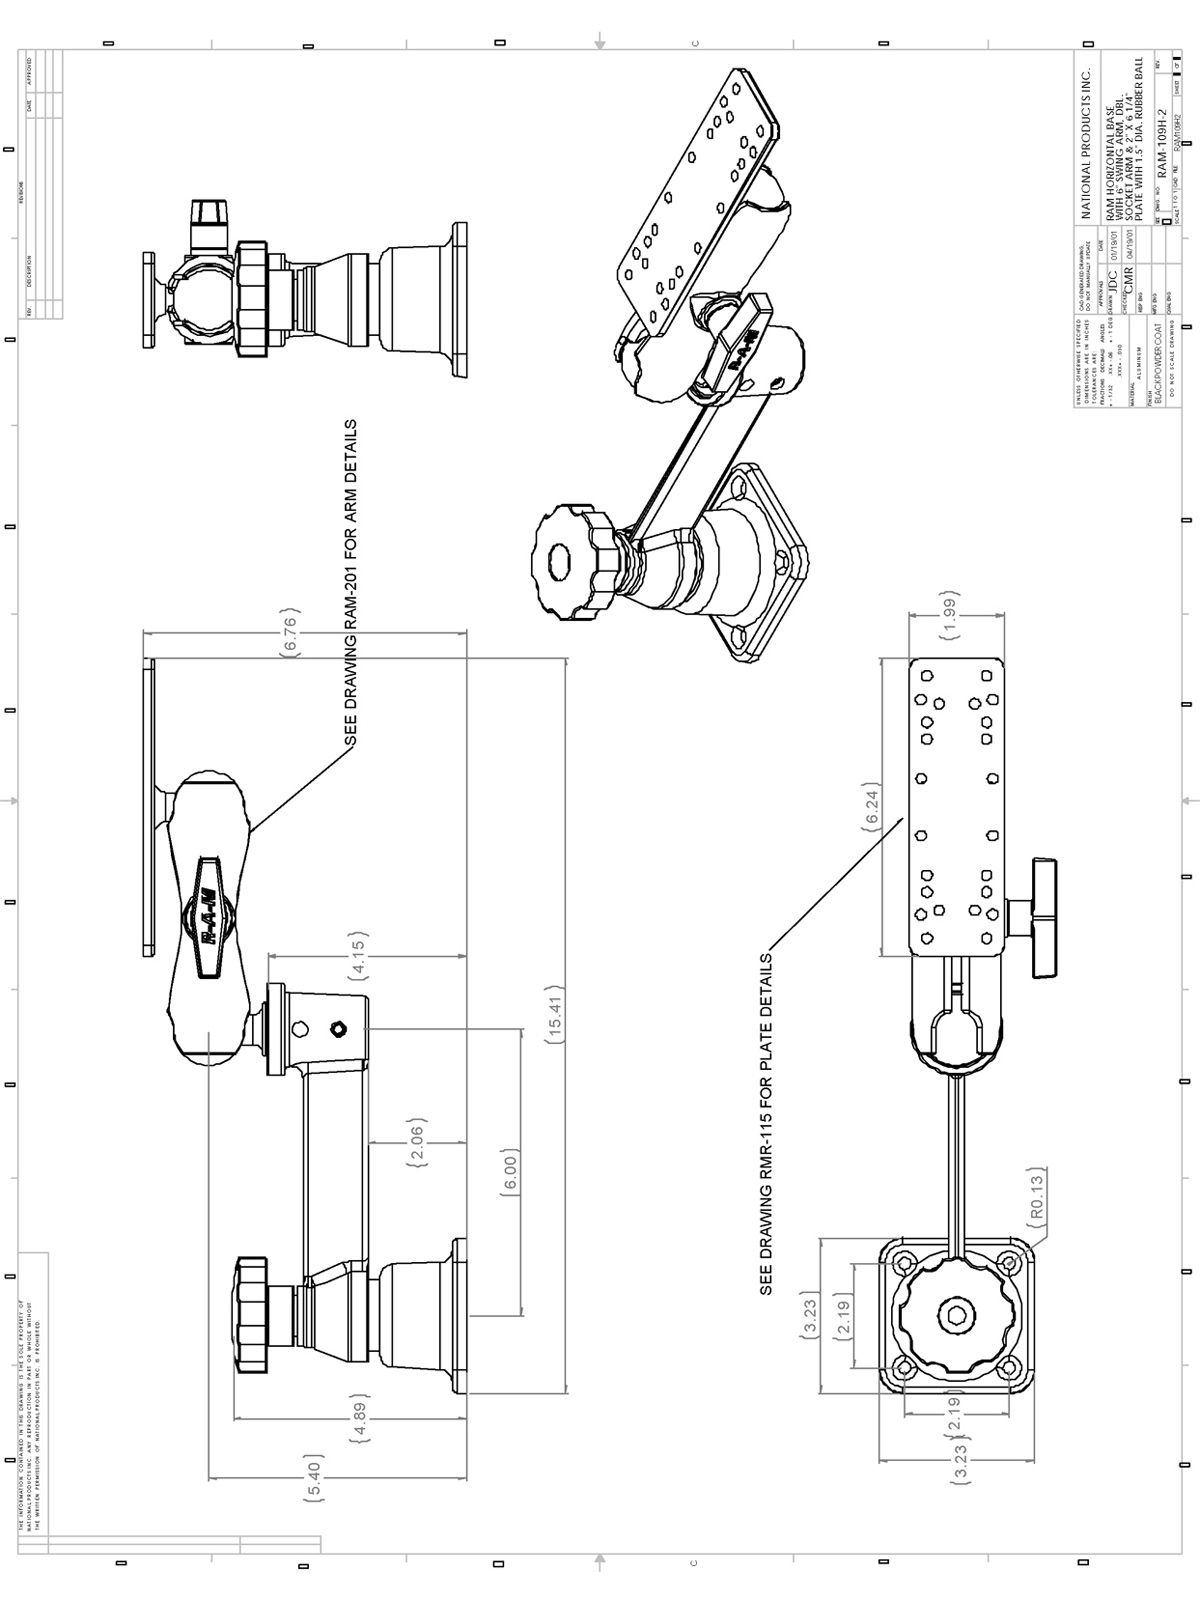 RAM Mounts Schwenkarm für Marine-GPS - Horizontal-Basis, mittlerer Verbindungsarm, rechteckige Universal-Platte (ca. 158 x 50 mm, diverse Lochraster), C-Kugel (1,5 Zoll)